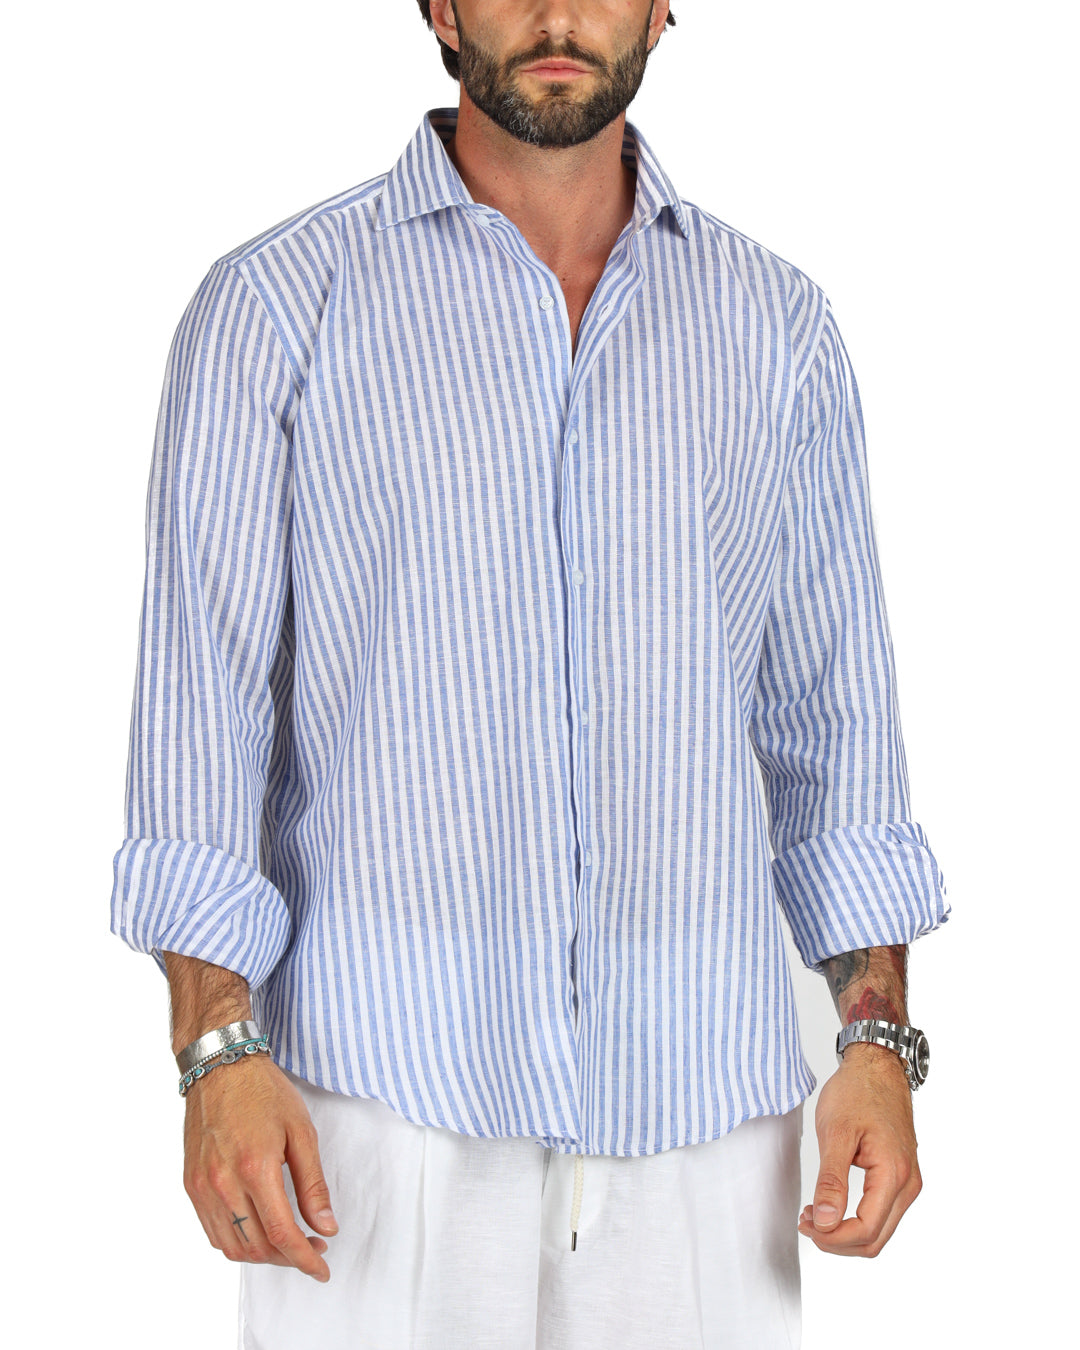 Ischia - Classic light blue narrow striped linen shirt